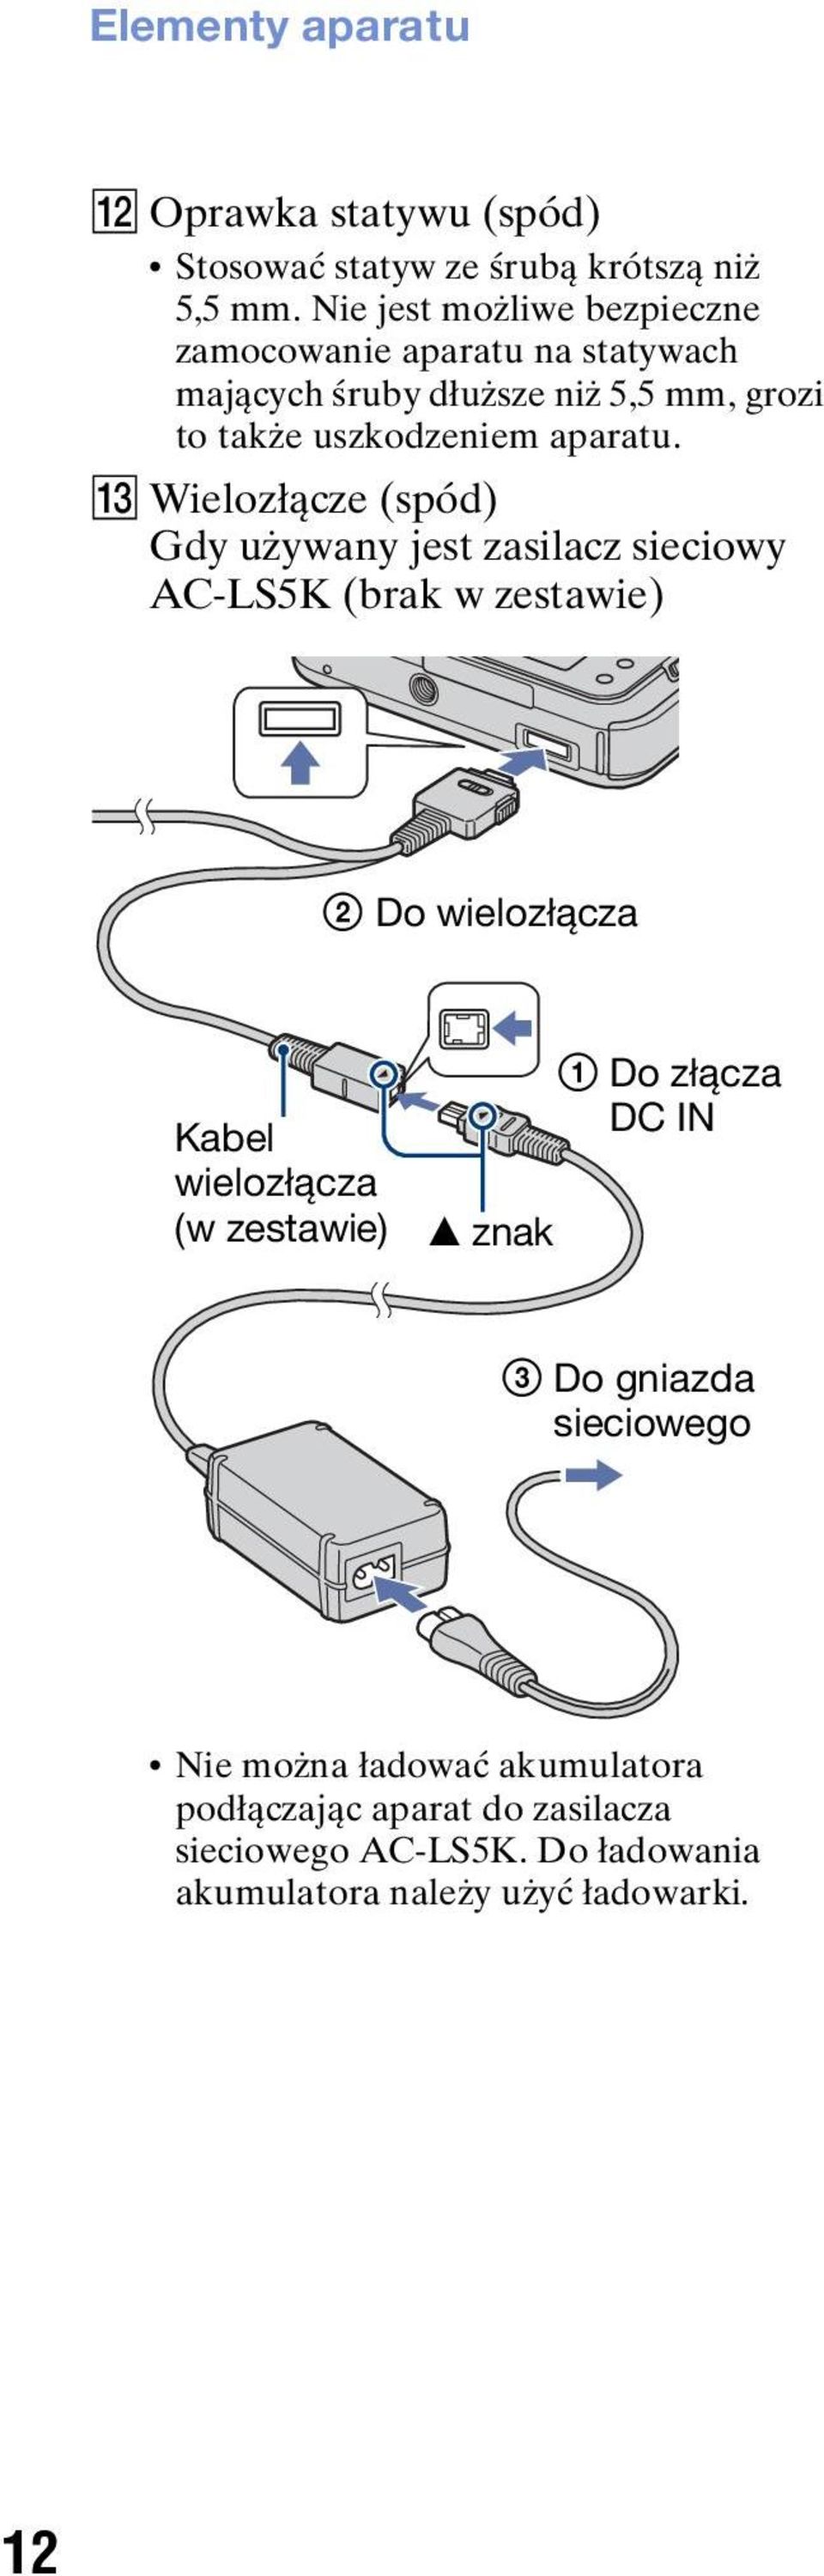 M Wielozłącze (spód) Gdy używany jest zasilacz sieciowy AC-LS5K (brak w zestawie) 2 Do wielozłącza Kabel wielozłącza (w zestawie) v